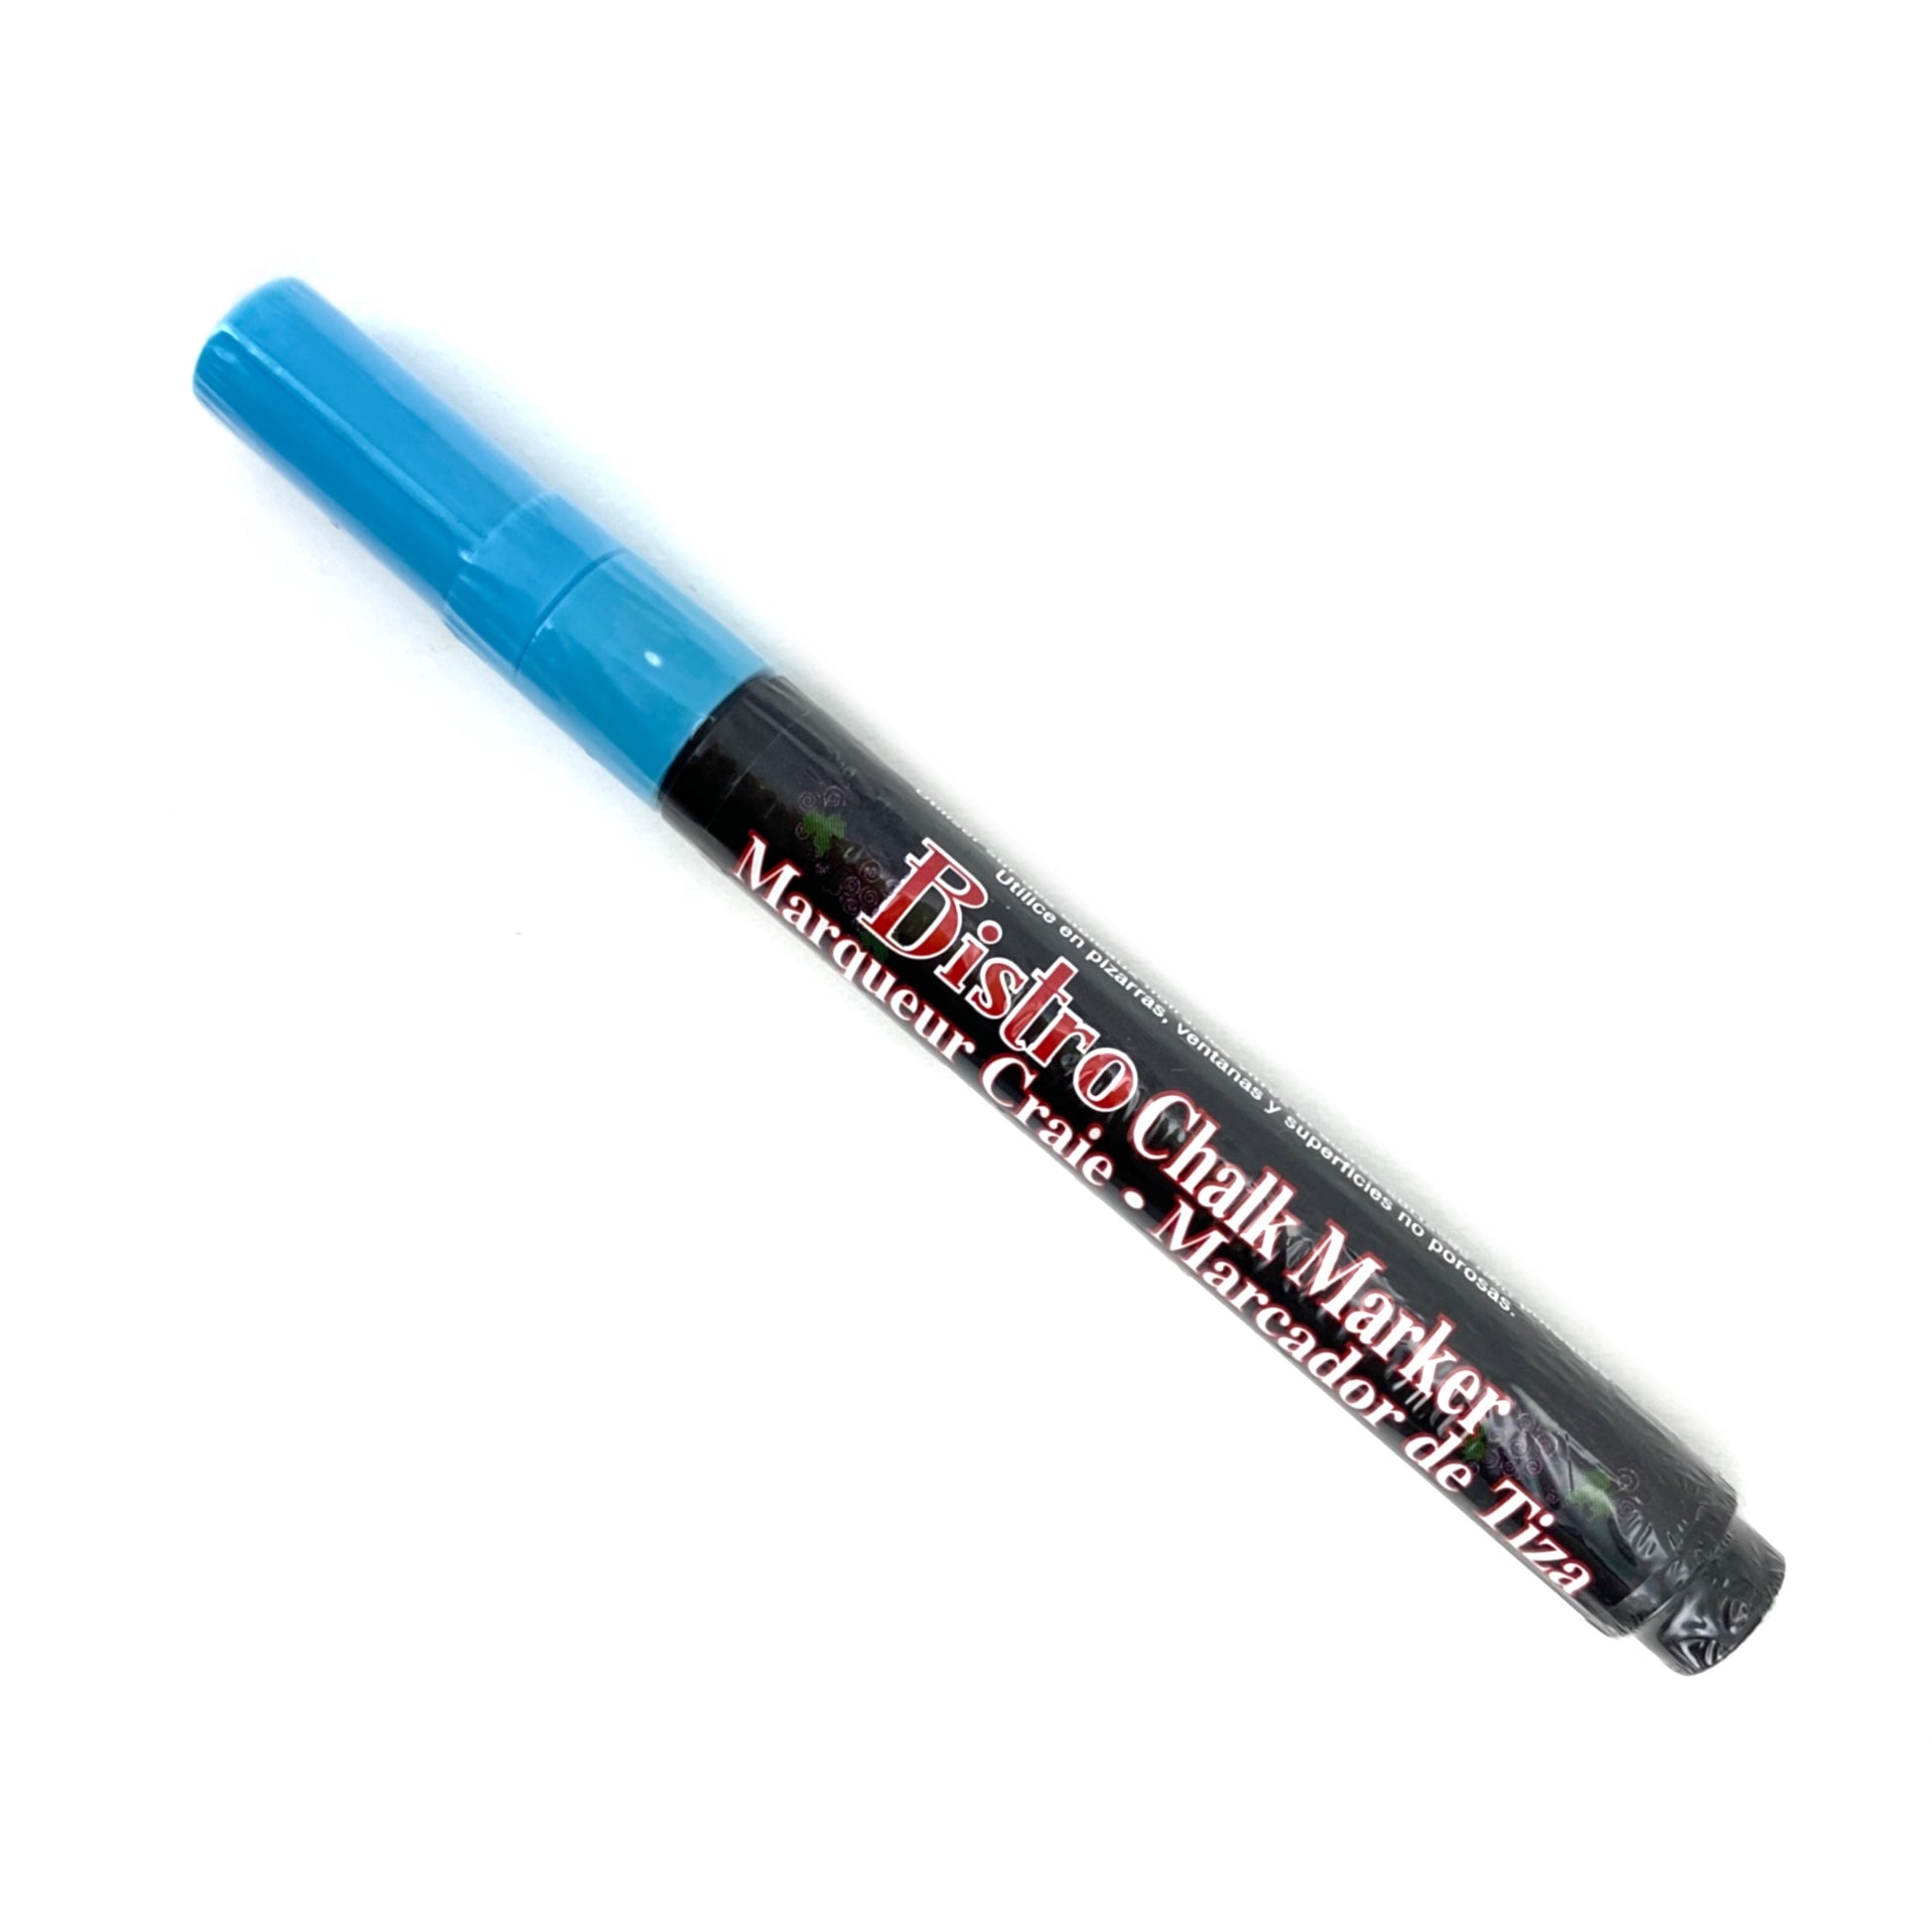 Bistro Chalk Marker - Fine (3mm) - Fluorescent Light Blue by Marvy Uchida - K. A. Artist Shop